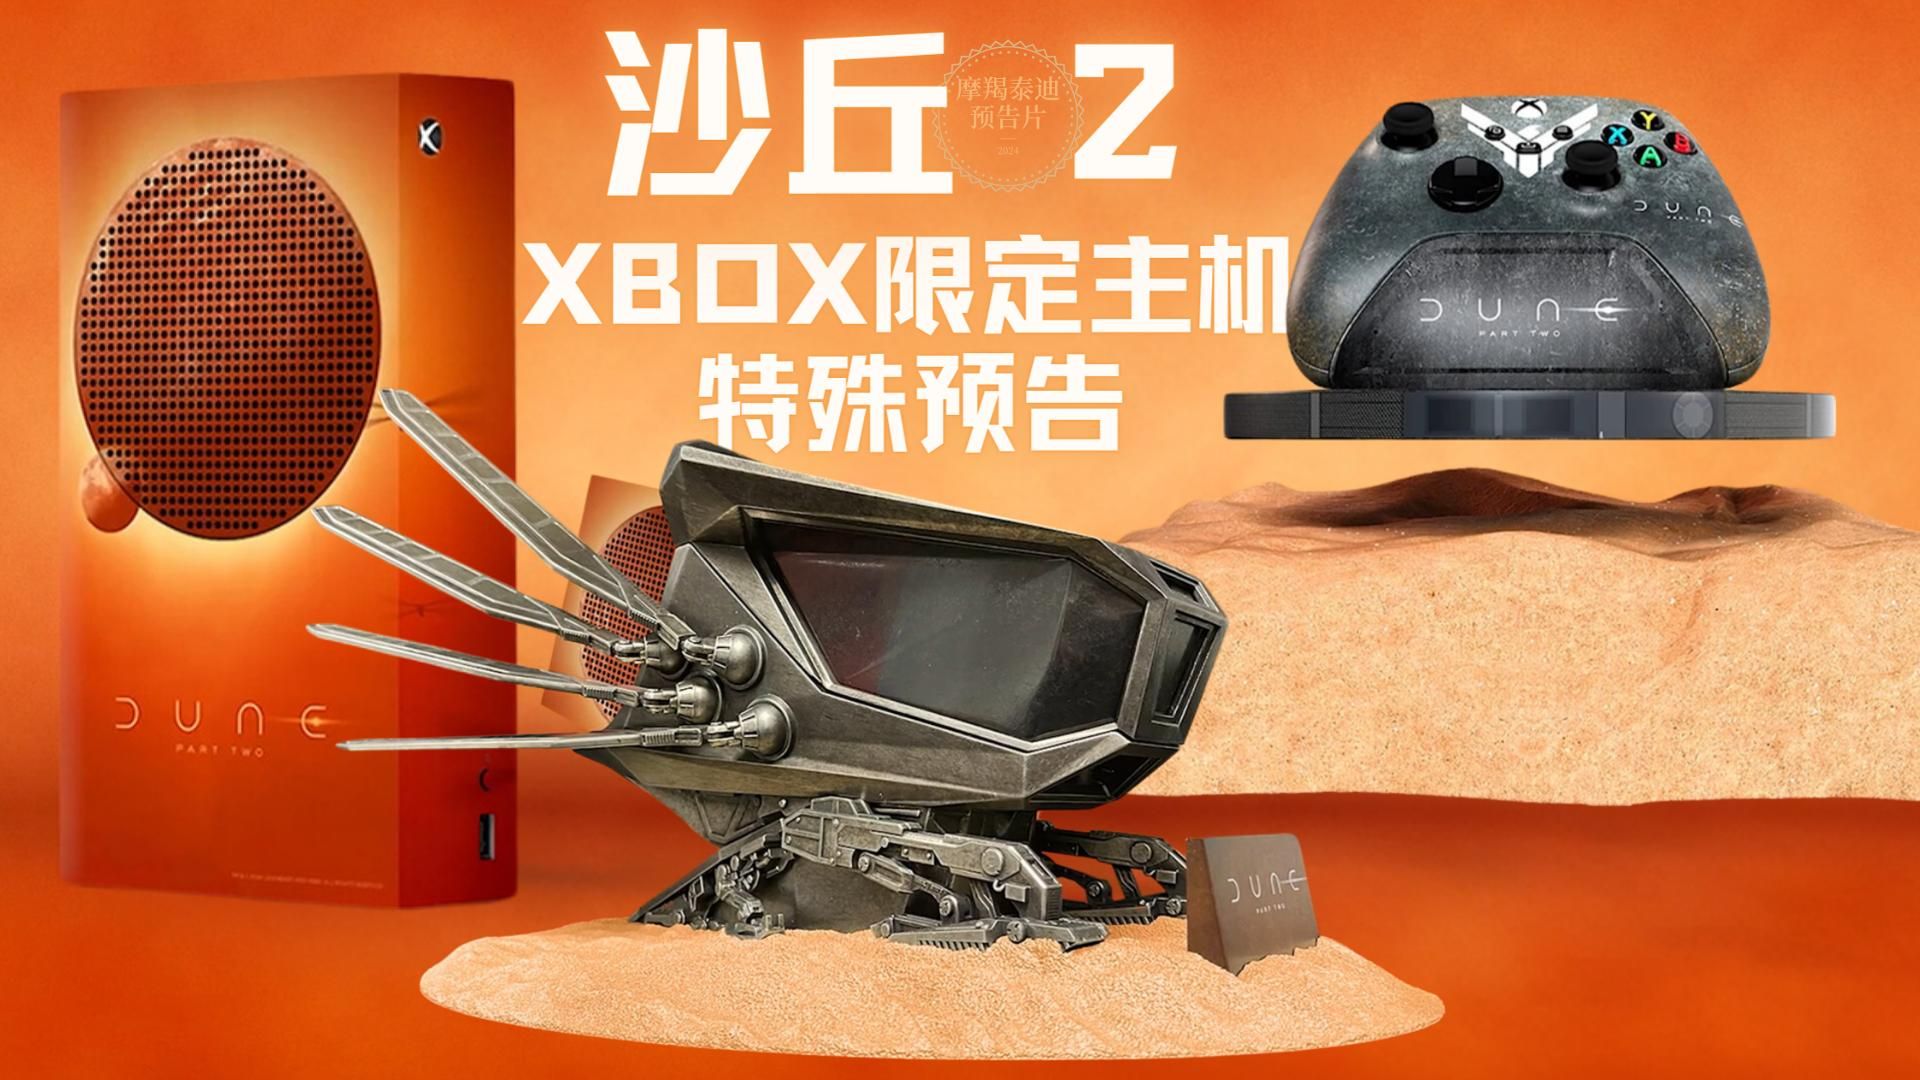 【中字】《沙丘2》微软超炫限定款XBOX主机套装 联动预告 3月8日全国上映